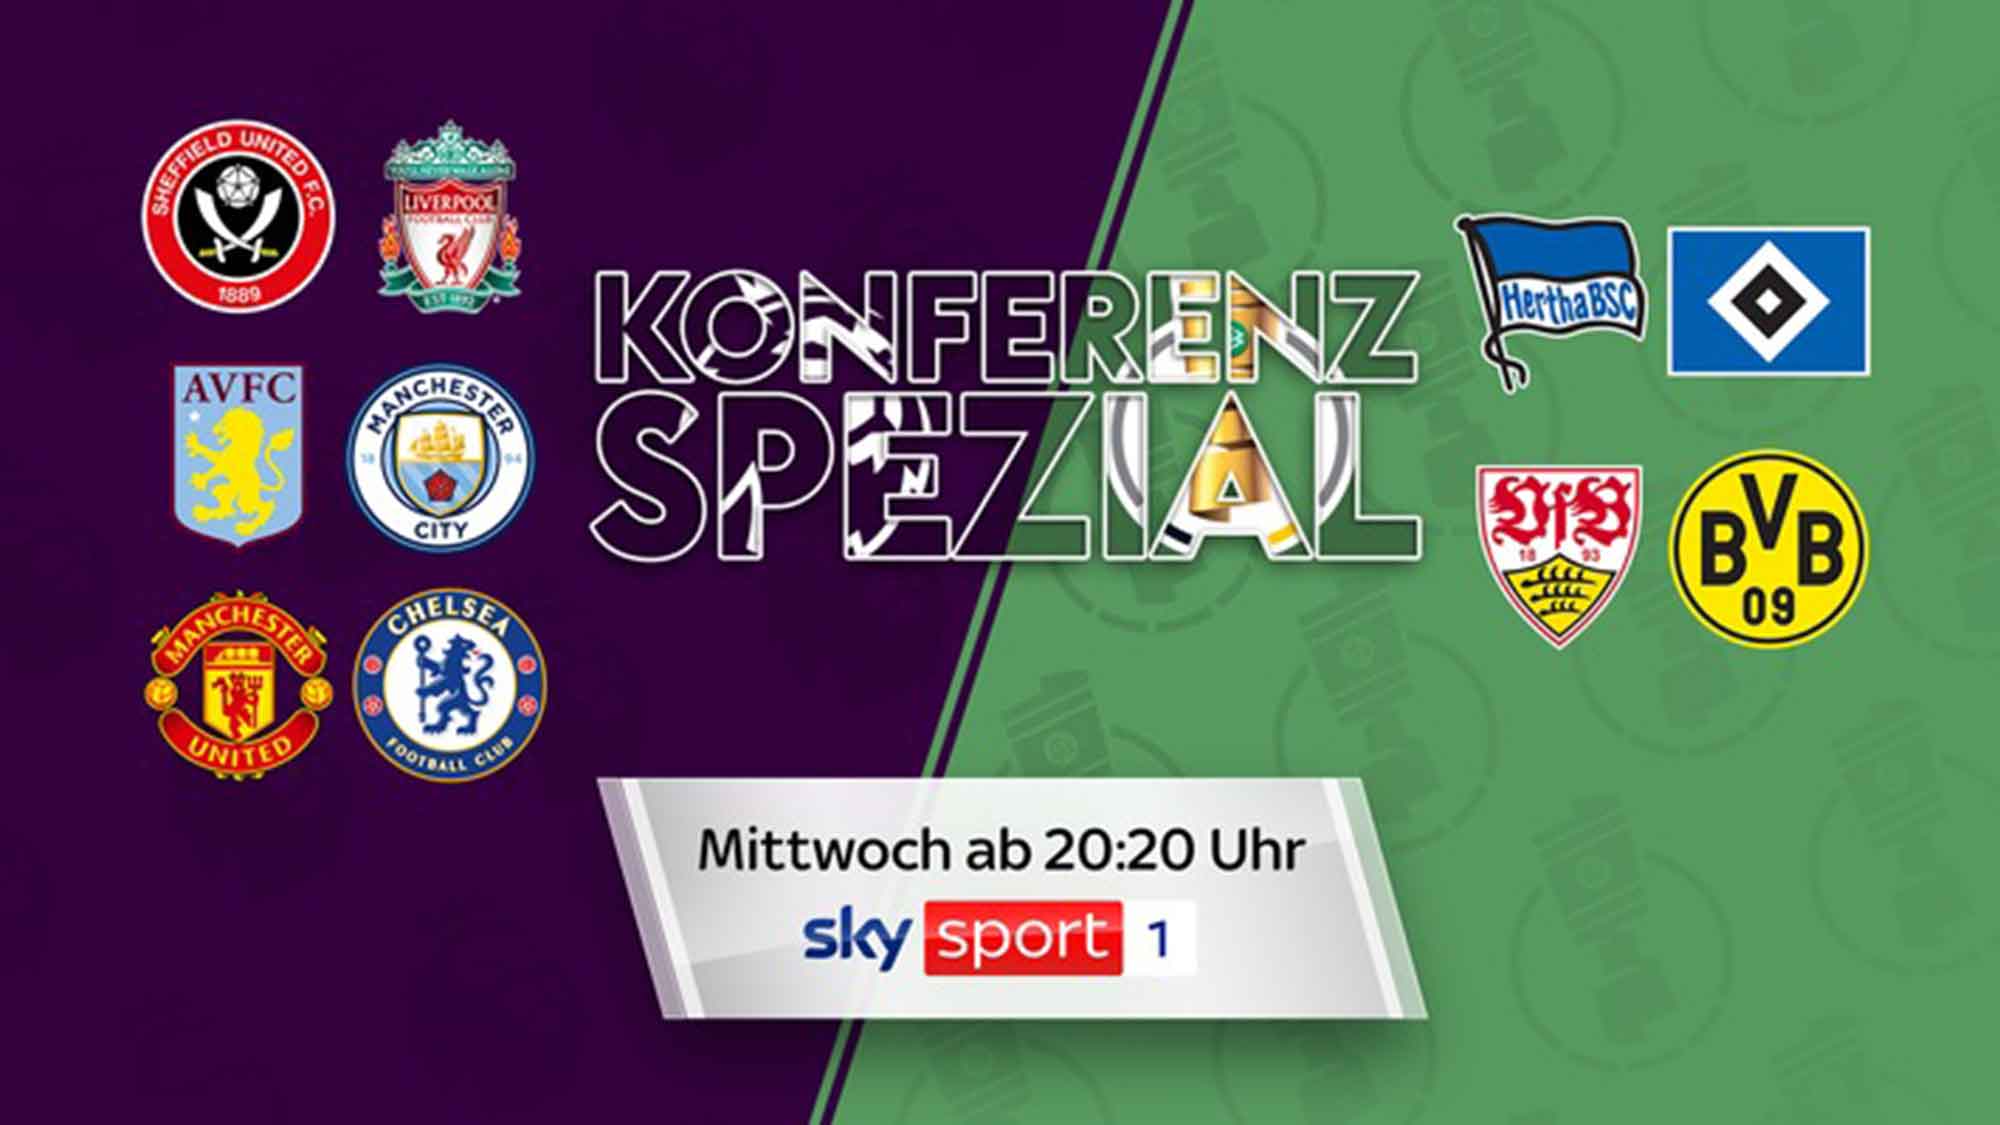 Alle Achtelfinalpartien des DFB Pokals live nur bei Sky, dazu die »Konferenz Spezial« unter anderem mit Stuttgart gegen Dortmund und »ManUnited« gegen Chelsea